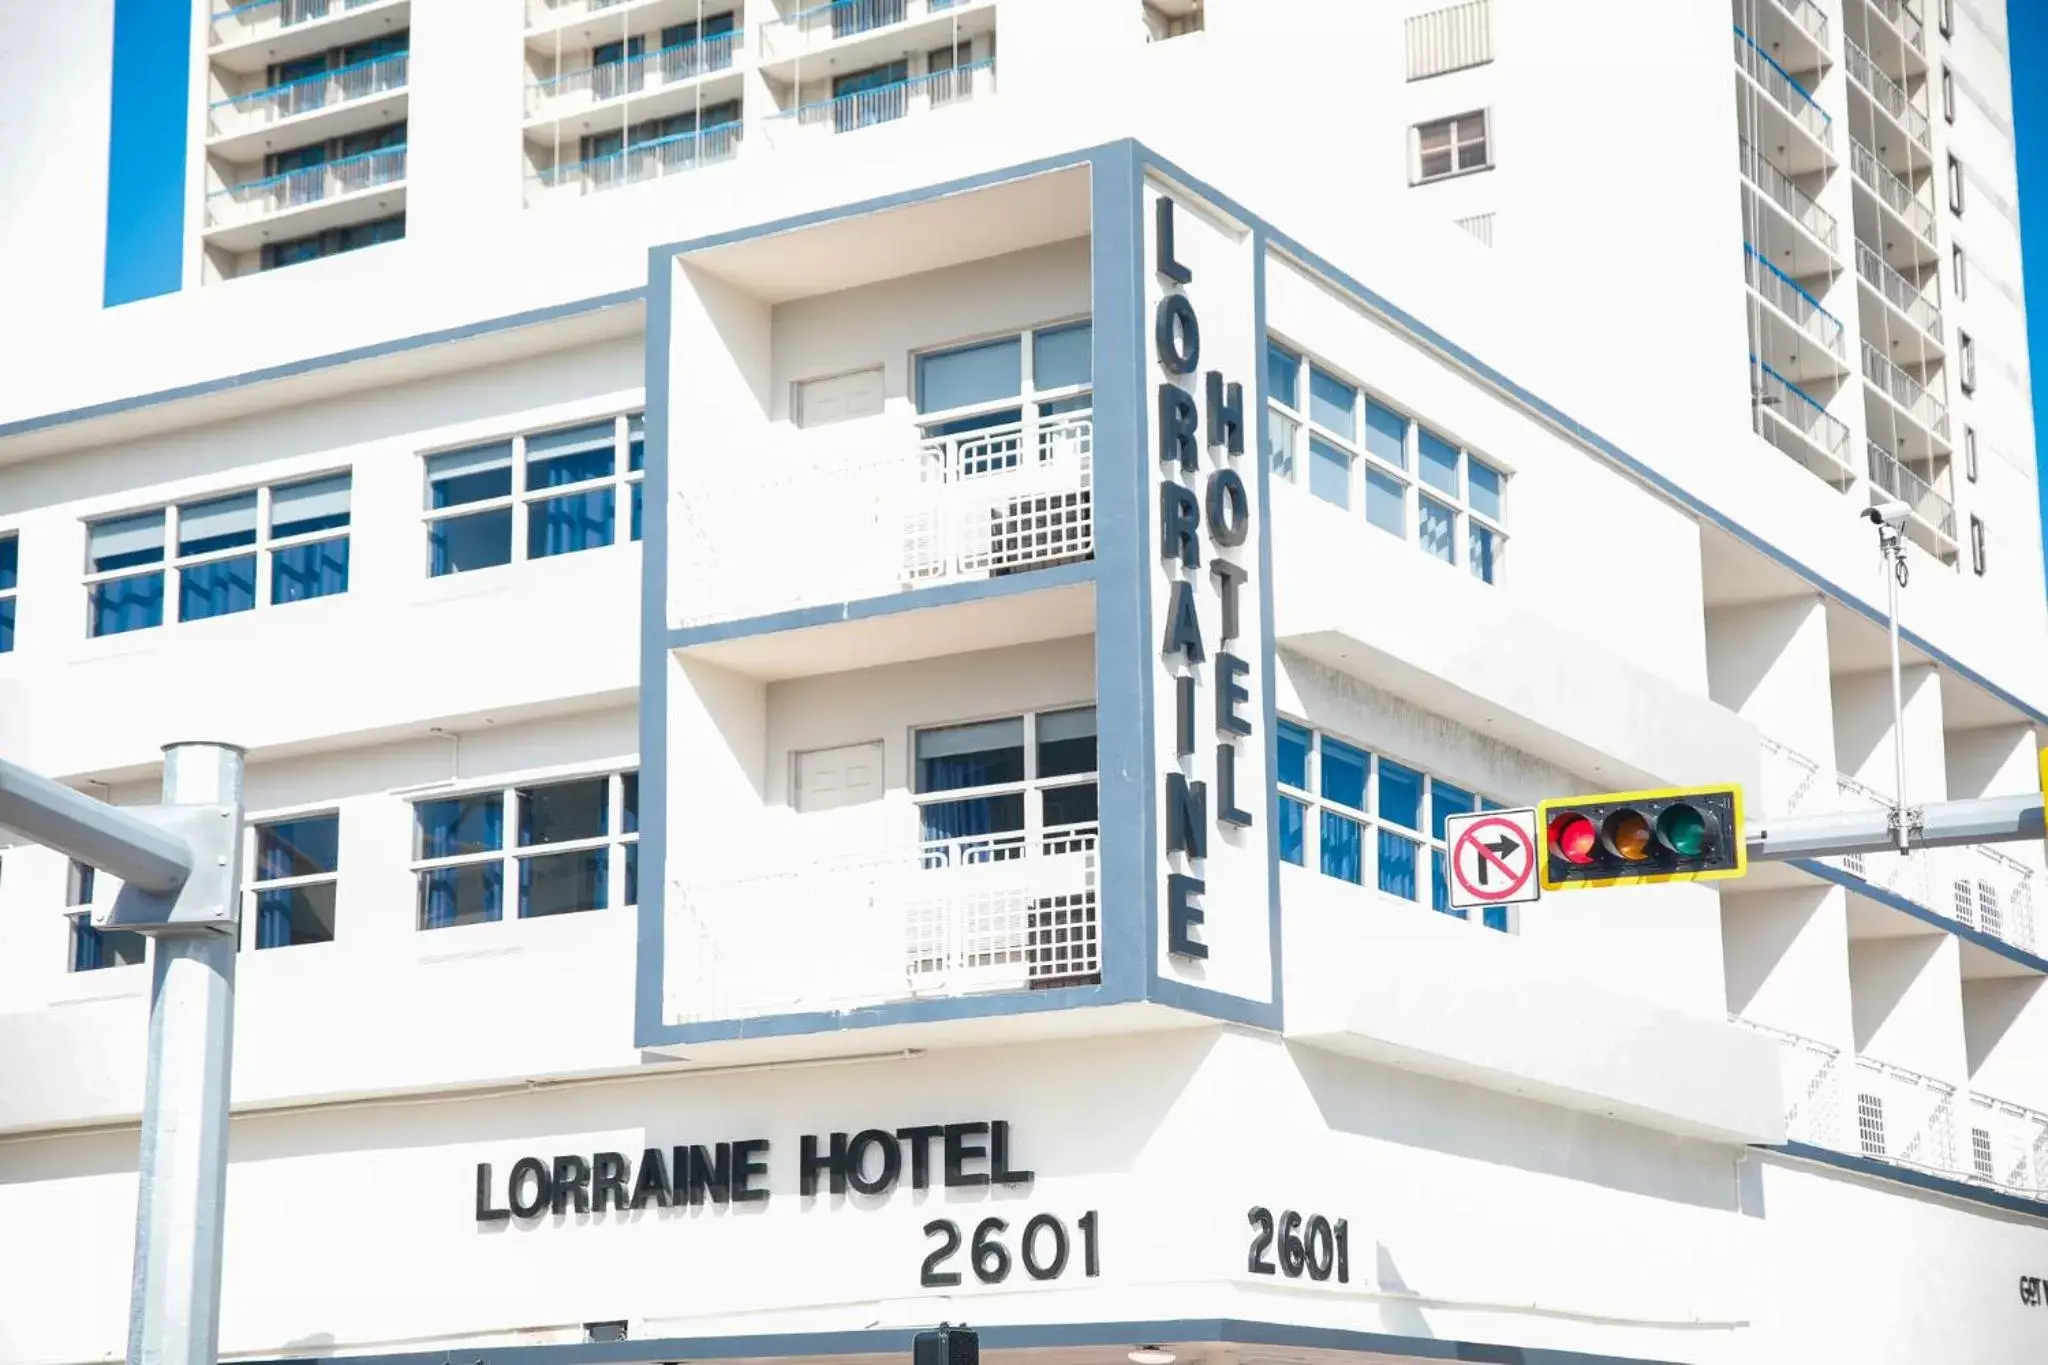 Facade/entrance, Property Building in Lorraine Hotel